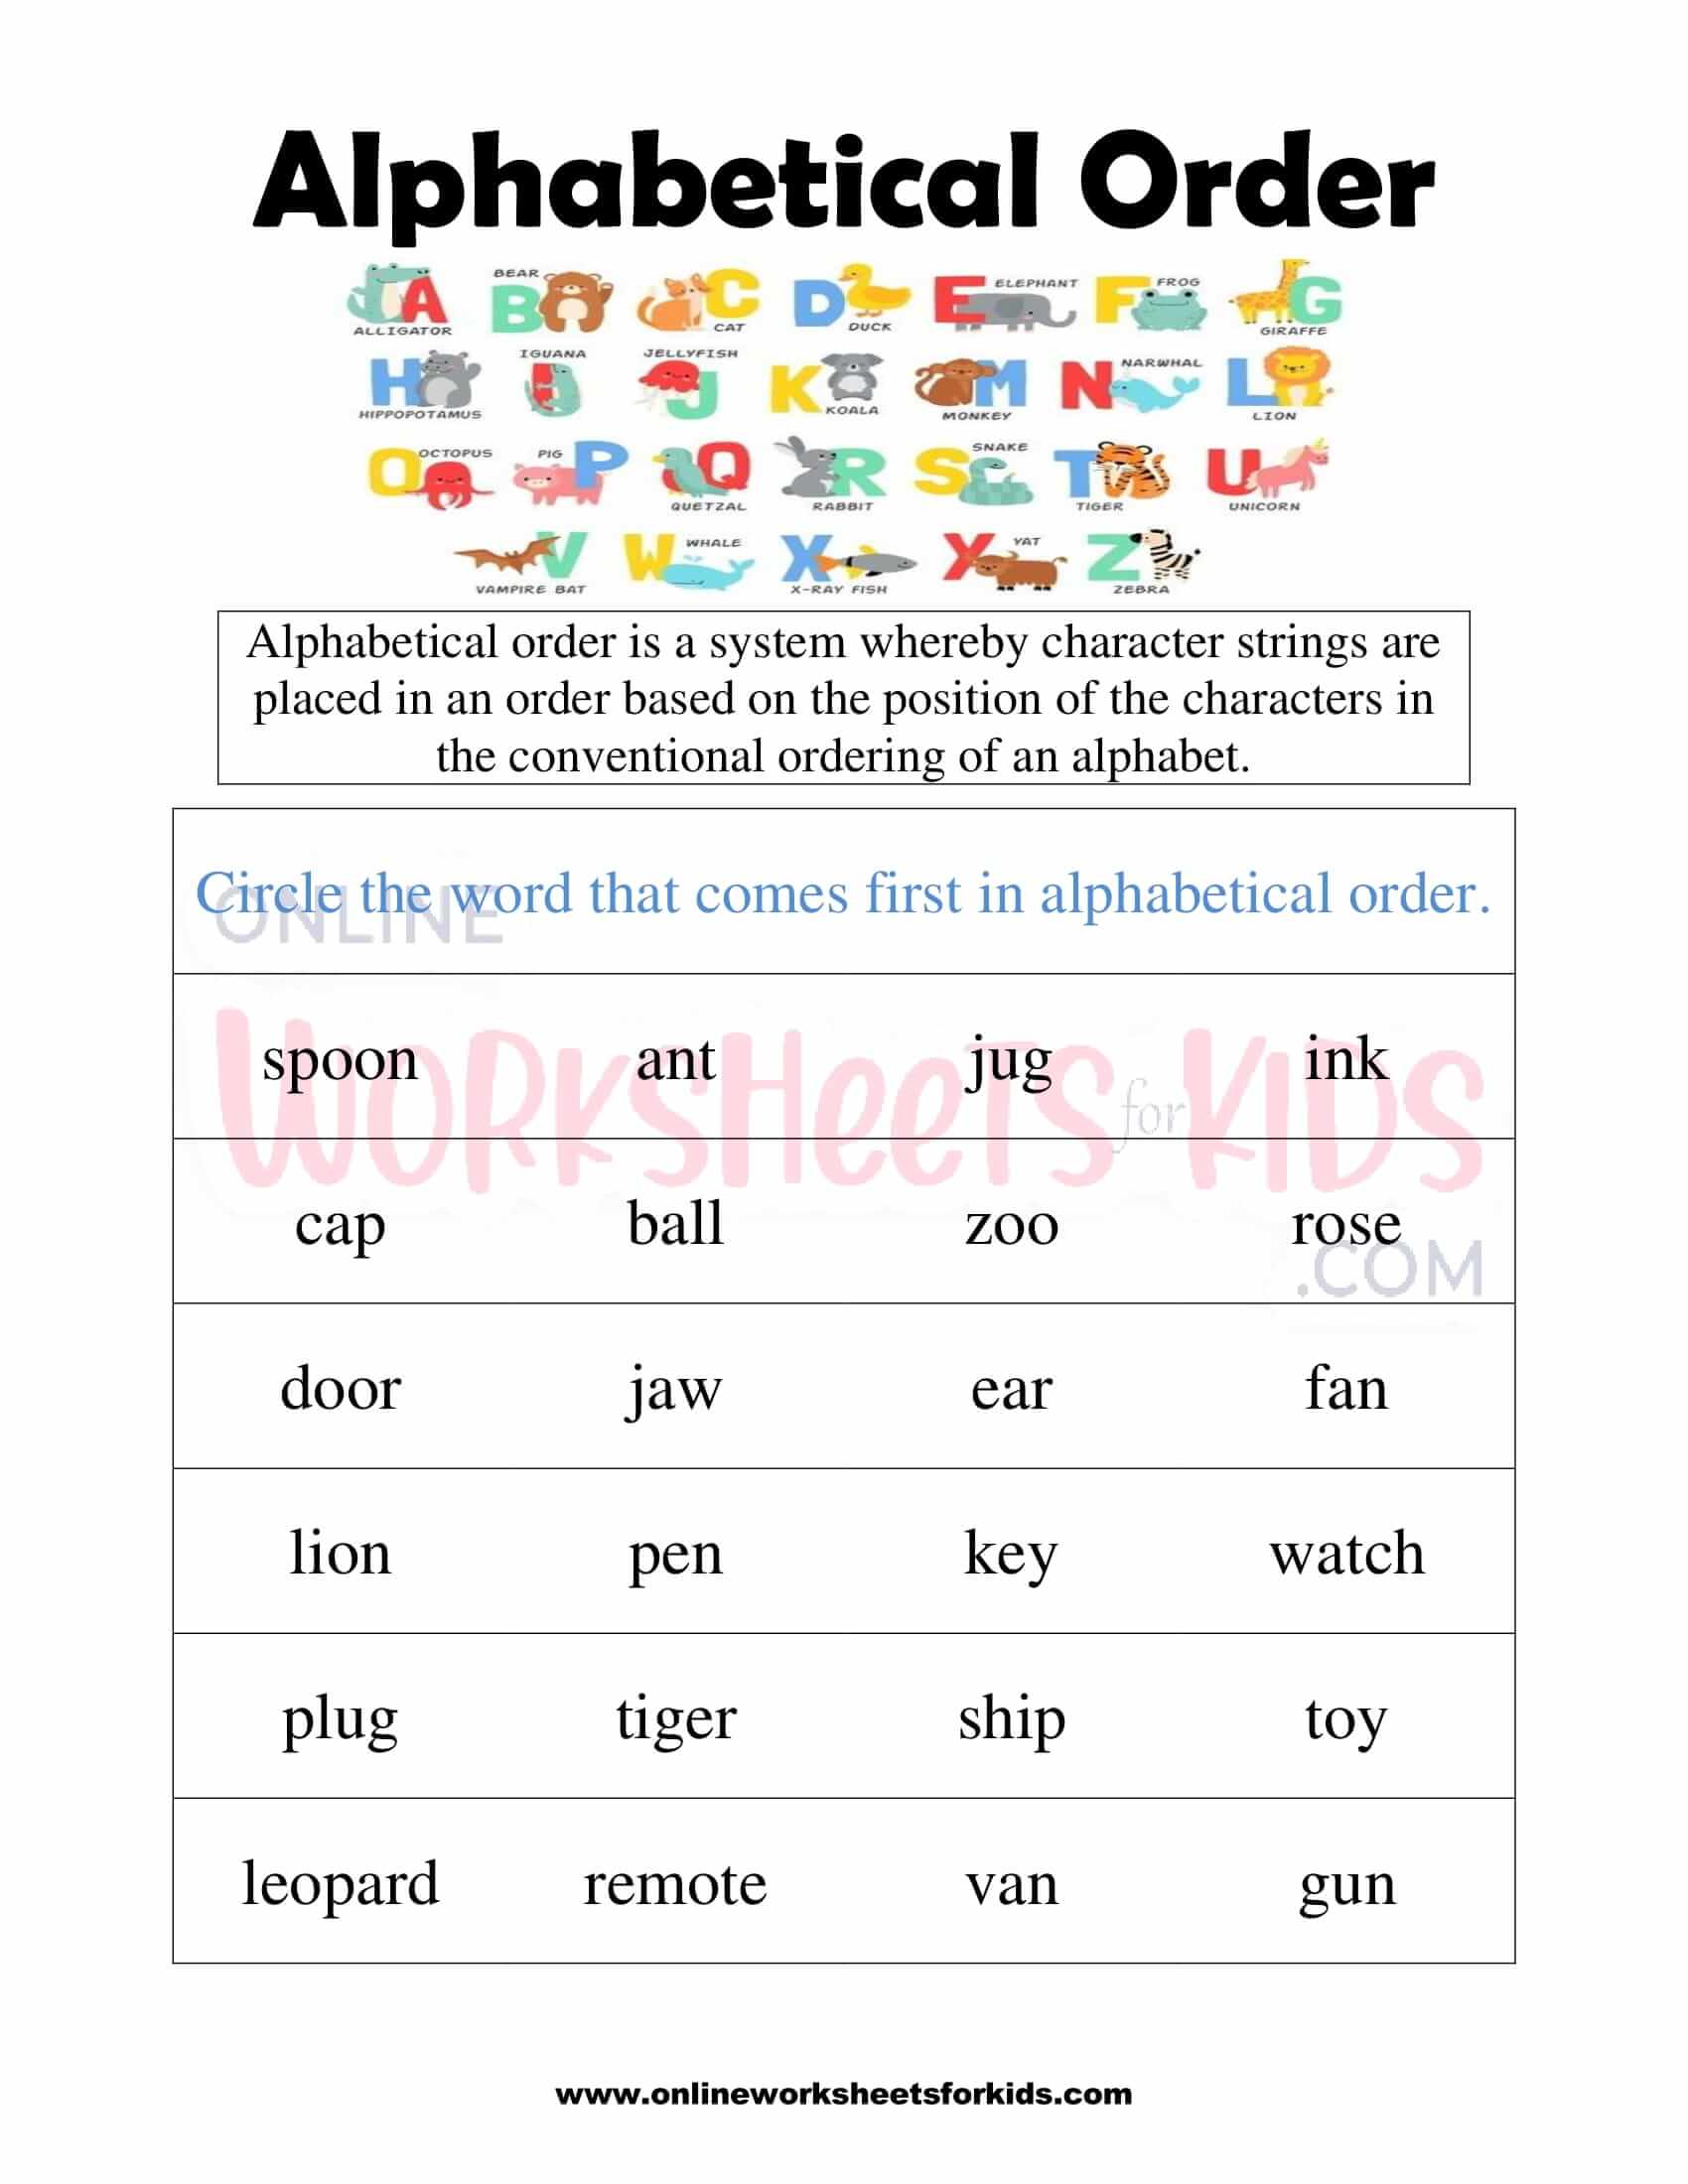 alphabetical-order-worksheets-k5-learning-alphabetical-order